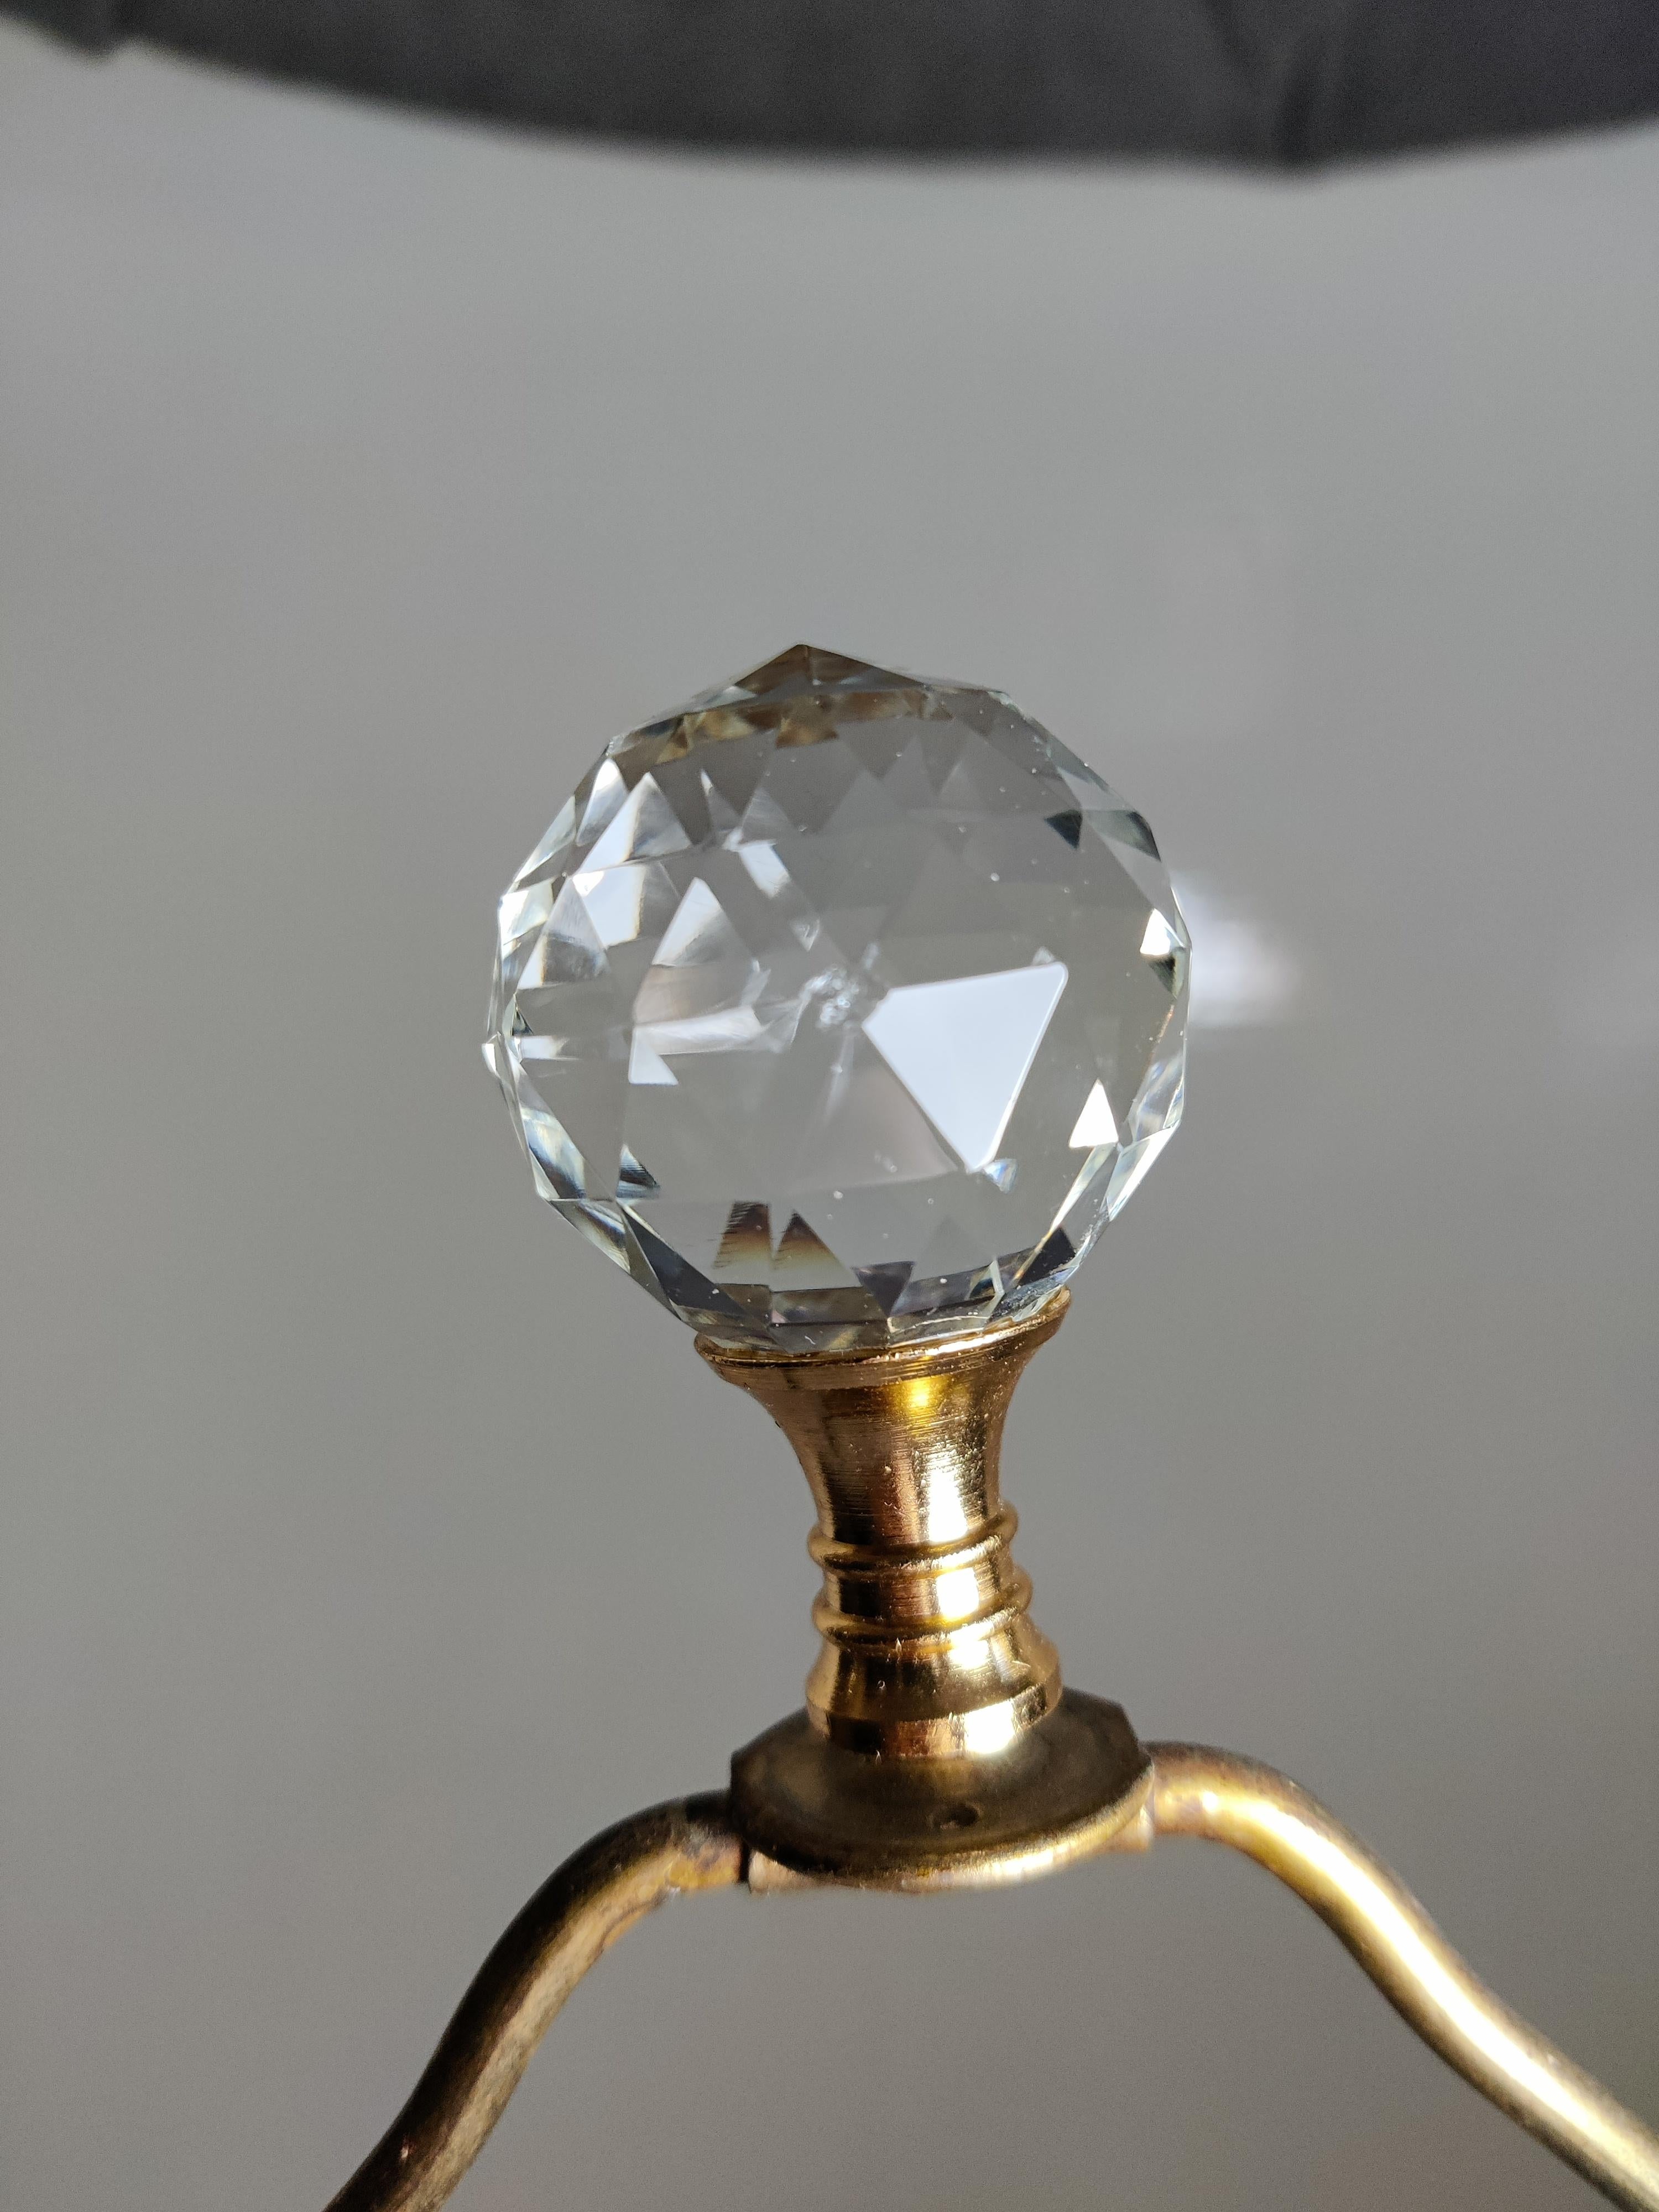 Mid Century Waterford Herringbone Cut Kristall Lampe
Hergestellt in England
Messing hat Anlaufspuren vom Alter
Finial hat eine kleine Unvollkommenheit im Glas.  
24,5 H von der Basis bis zur Spitze.
Die Basis ist 5 x 5.
Die Kristallsäule hat einen